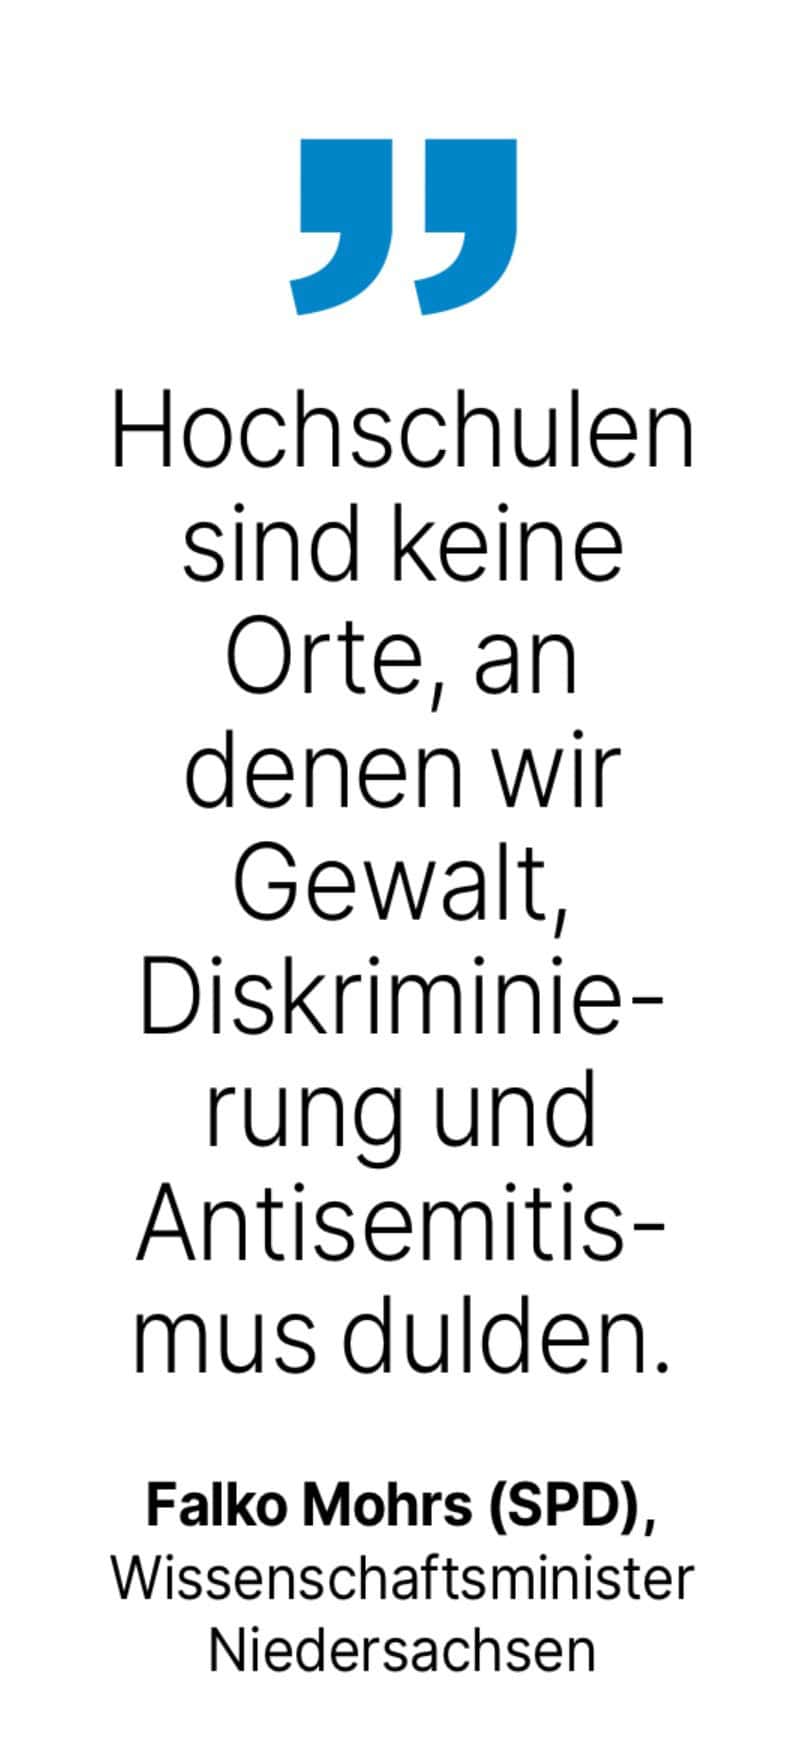 Falko Mohrs (SPD),
Wissenschaftsminister
Niedersachsen: Hochschulen sind keine Orte, an denen wir Gewalt!
Diskriminierung und Antisemitismus dulden.